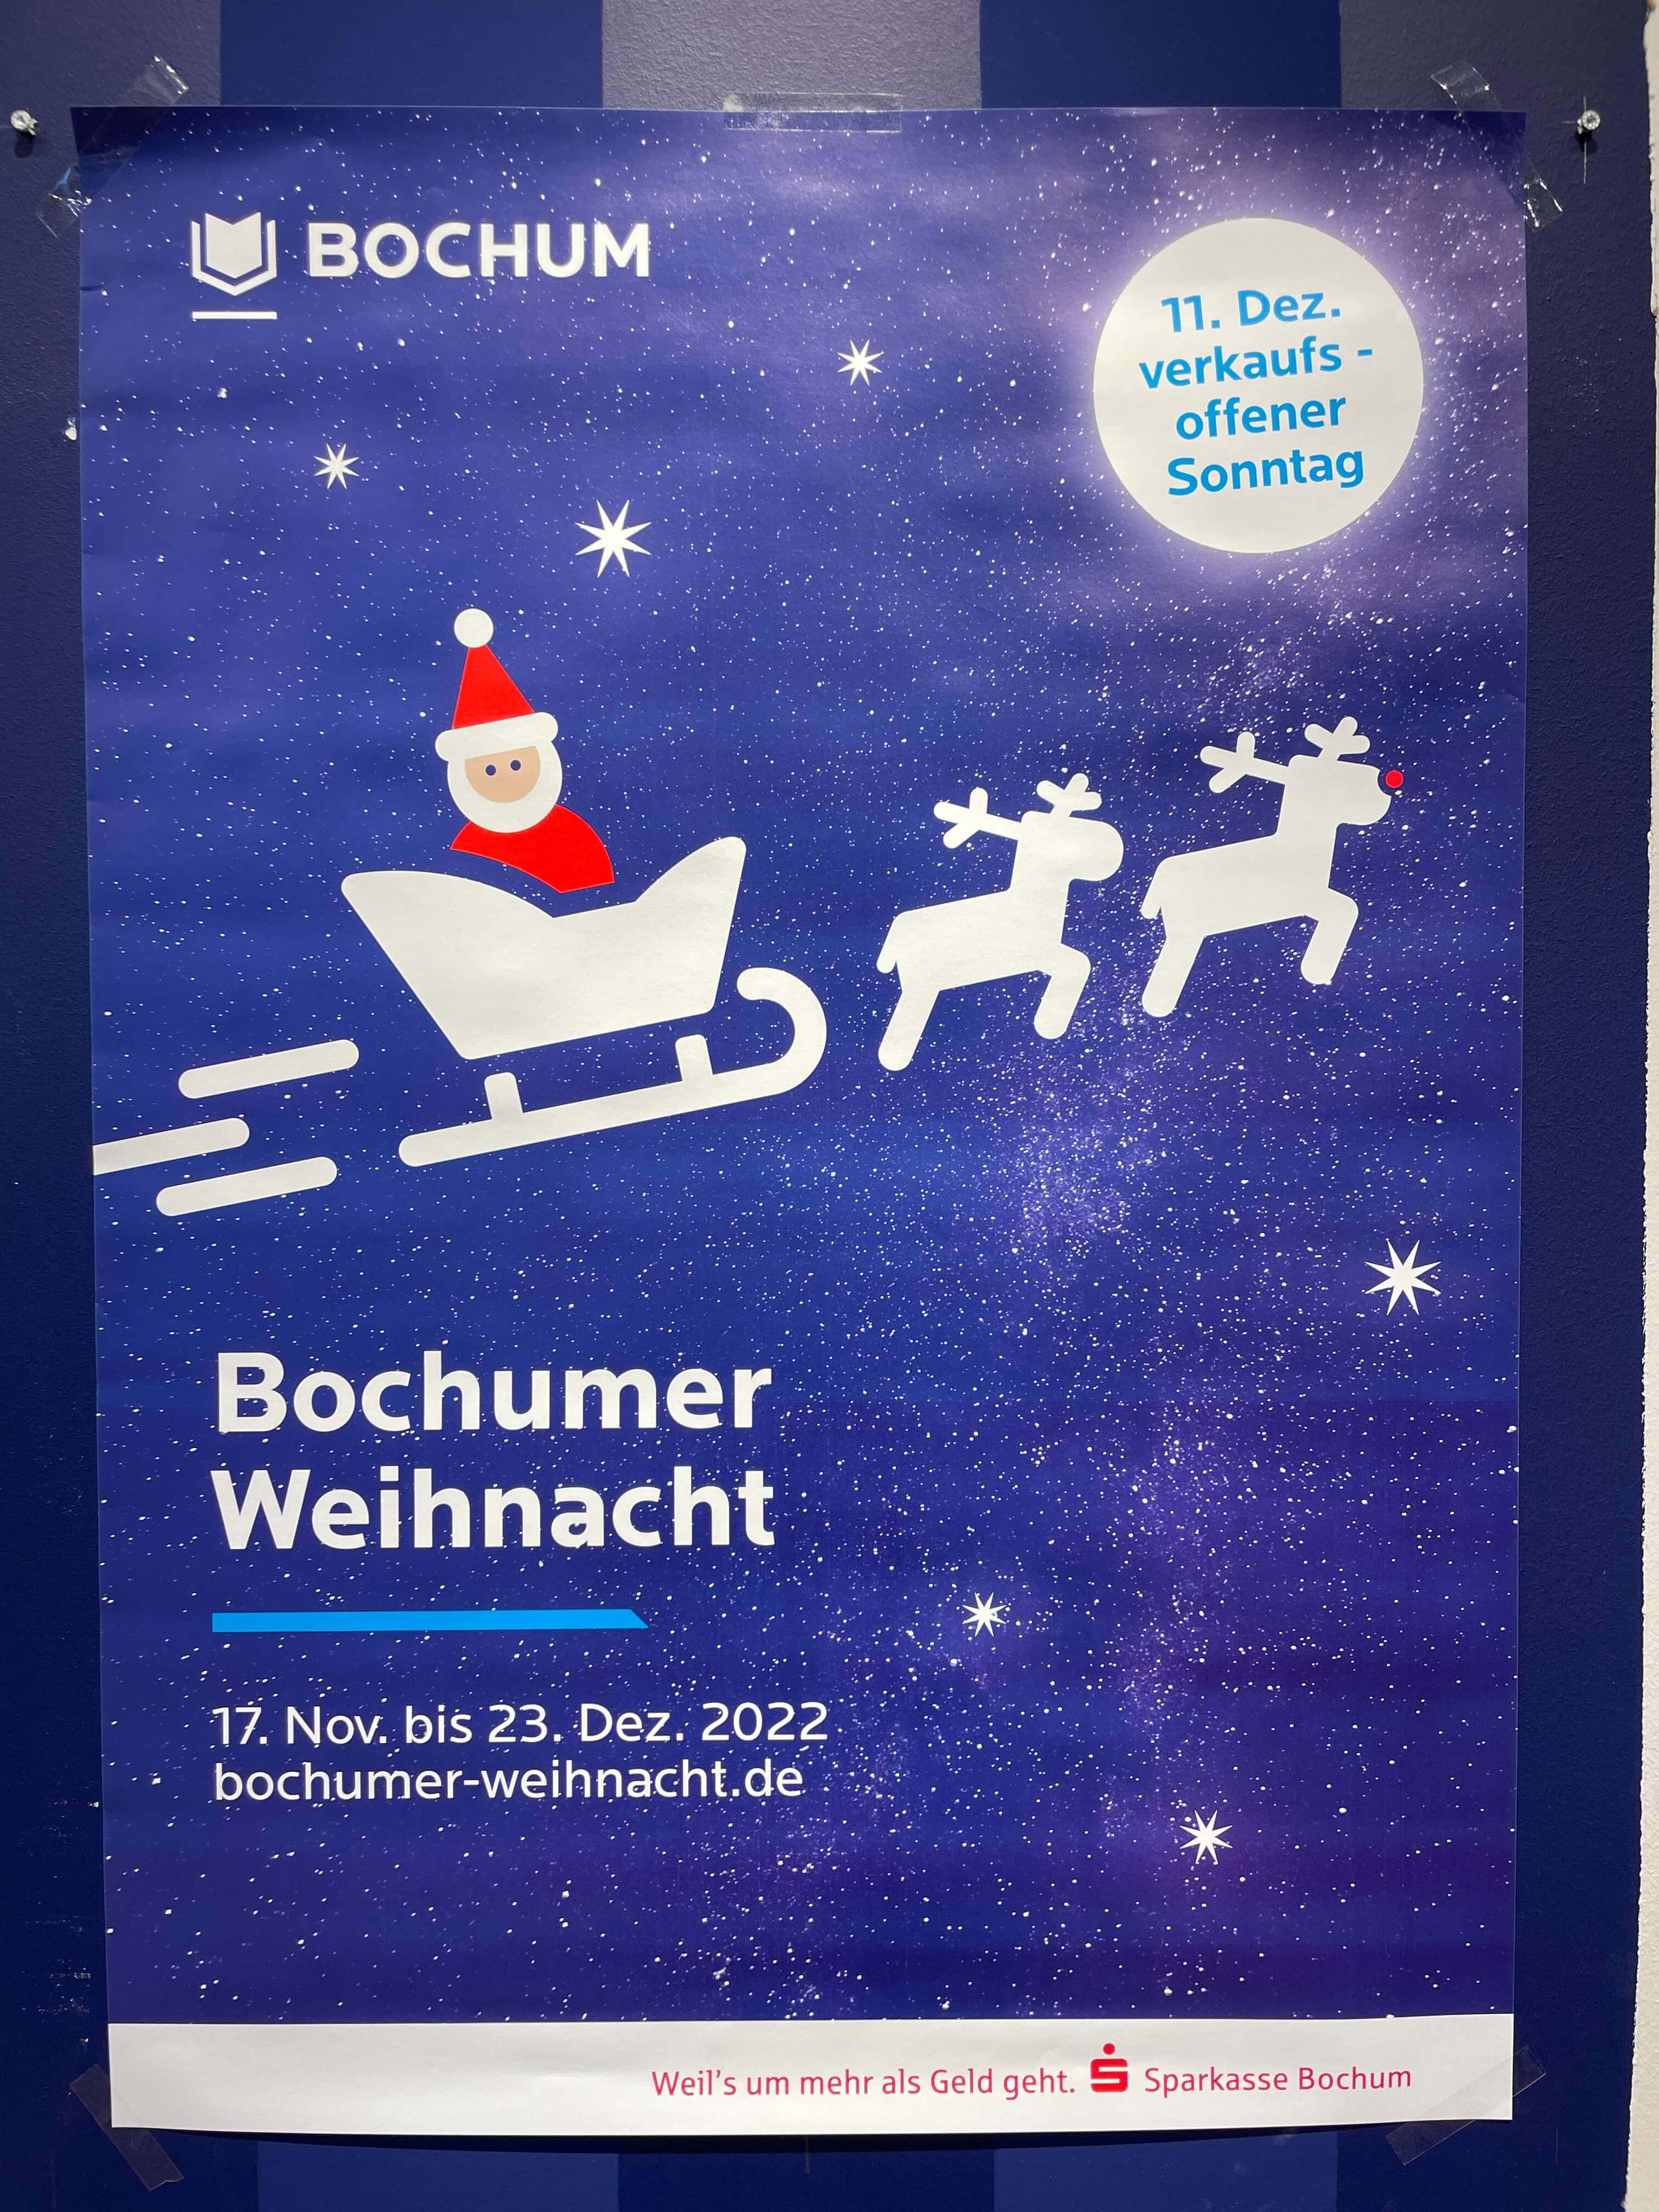 Bochumer Weihnacht: 17. Nov bis 23. Dez. 2022